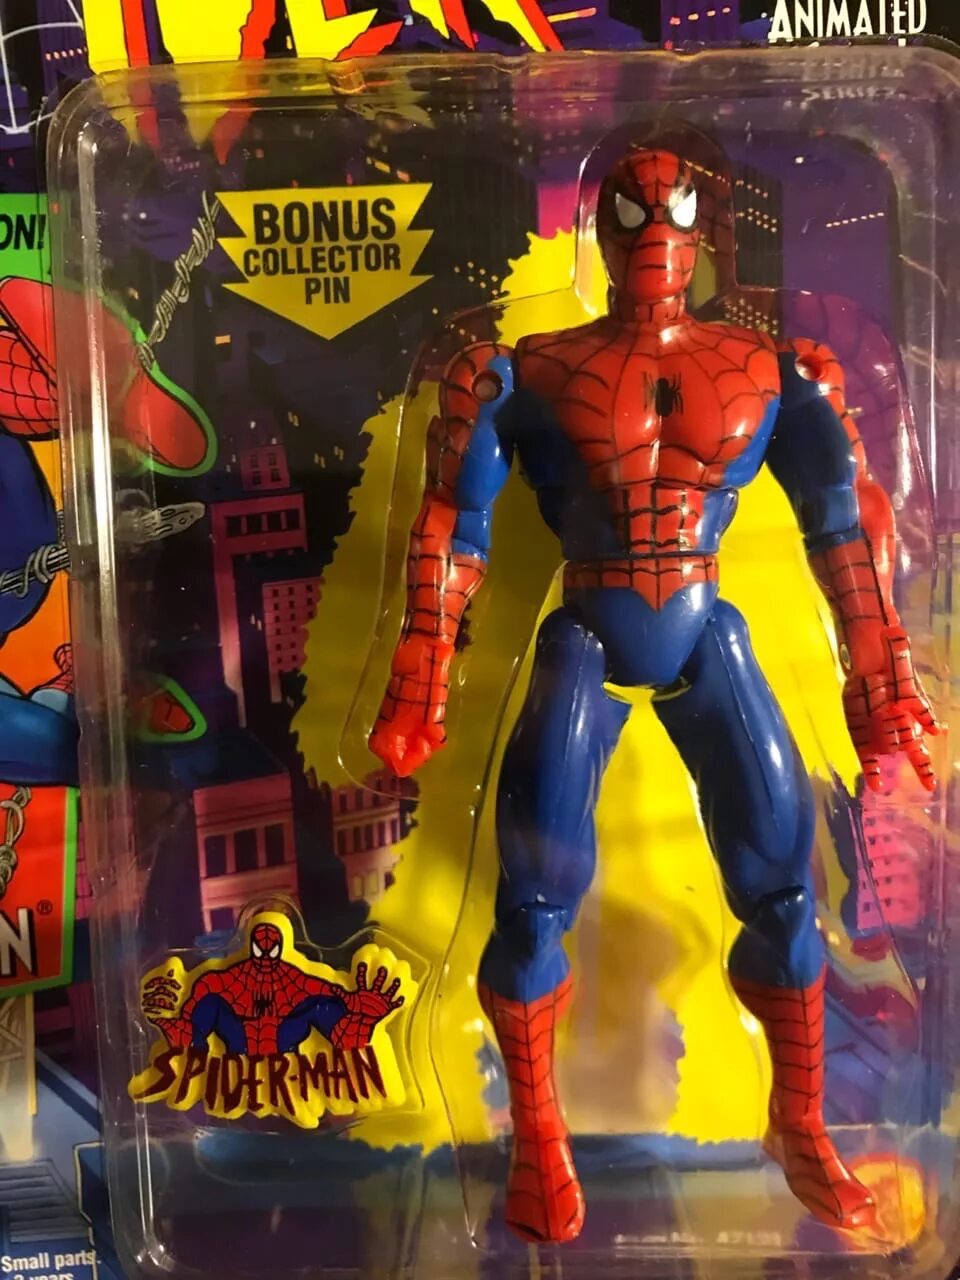 Фигурки TOYBIZ Spider-man 1994. Фигурки Spider man 1994 Toy biz. Toy biz super Poseable Spider man. Spider man фигурки TOYBIZ. Toy biz